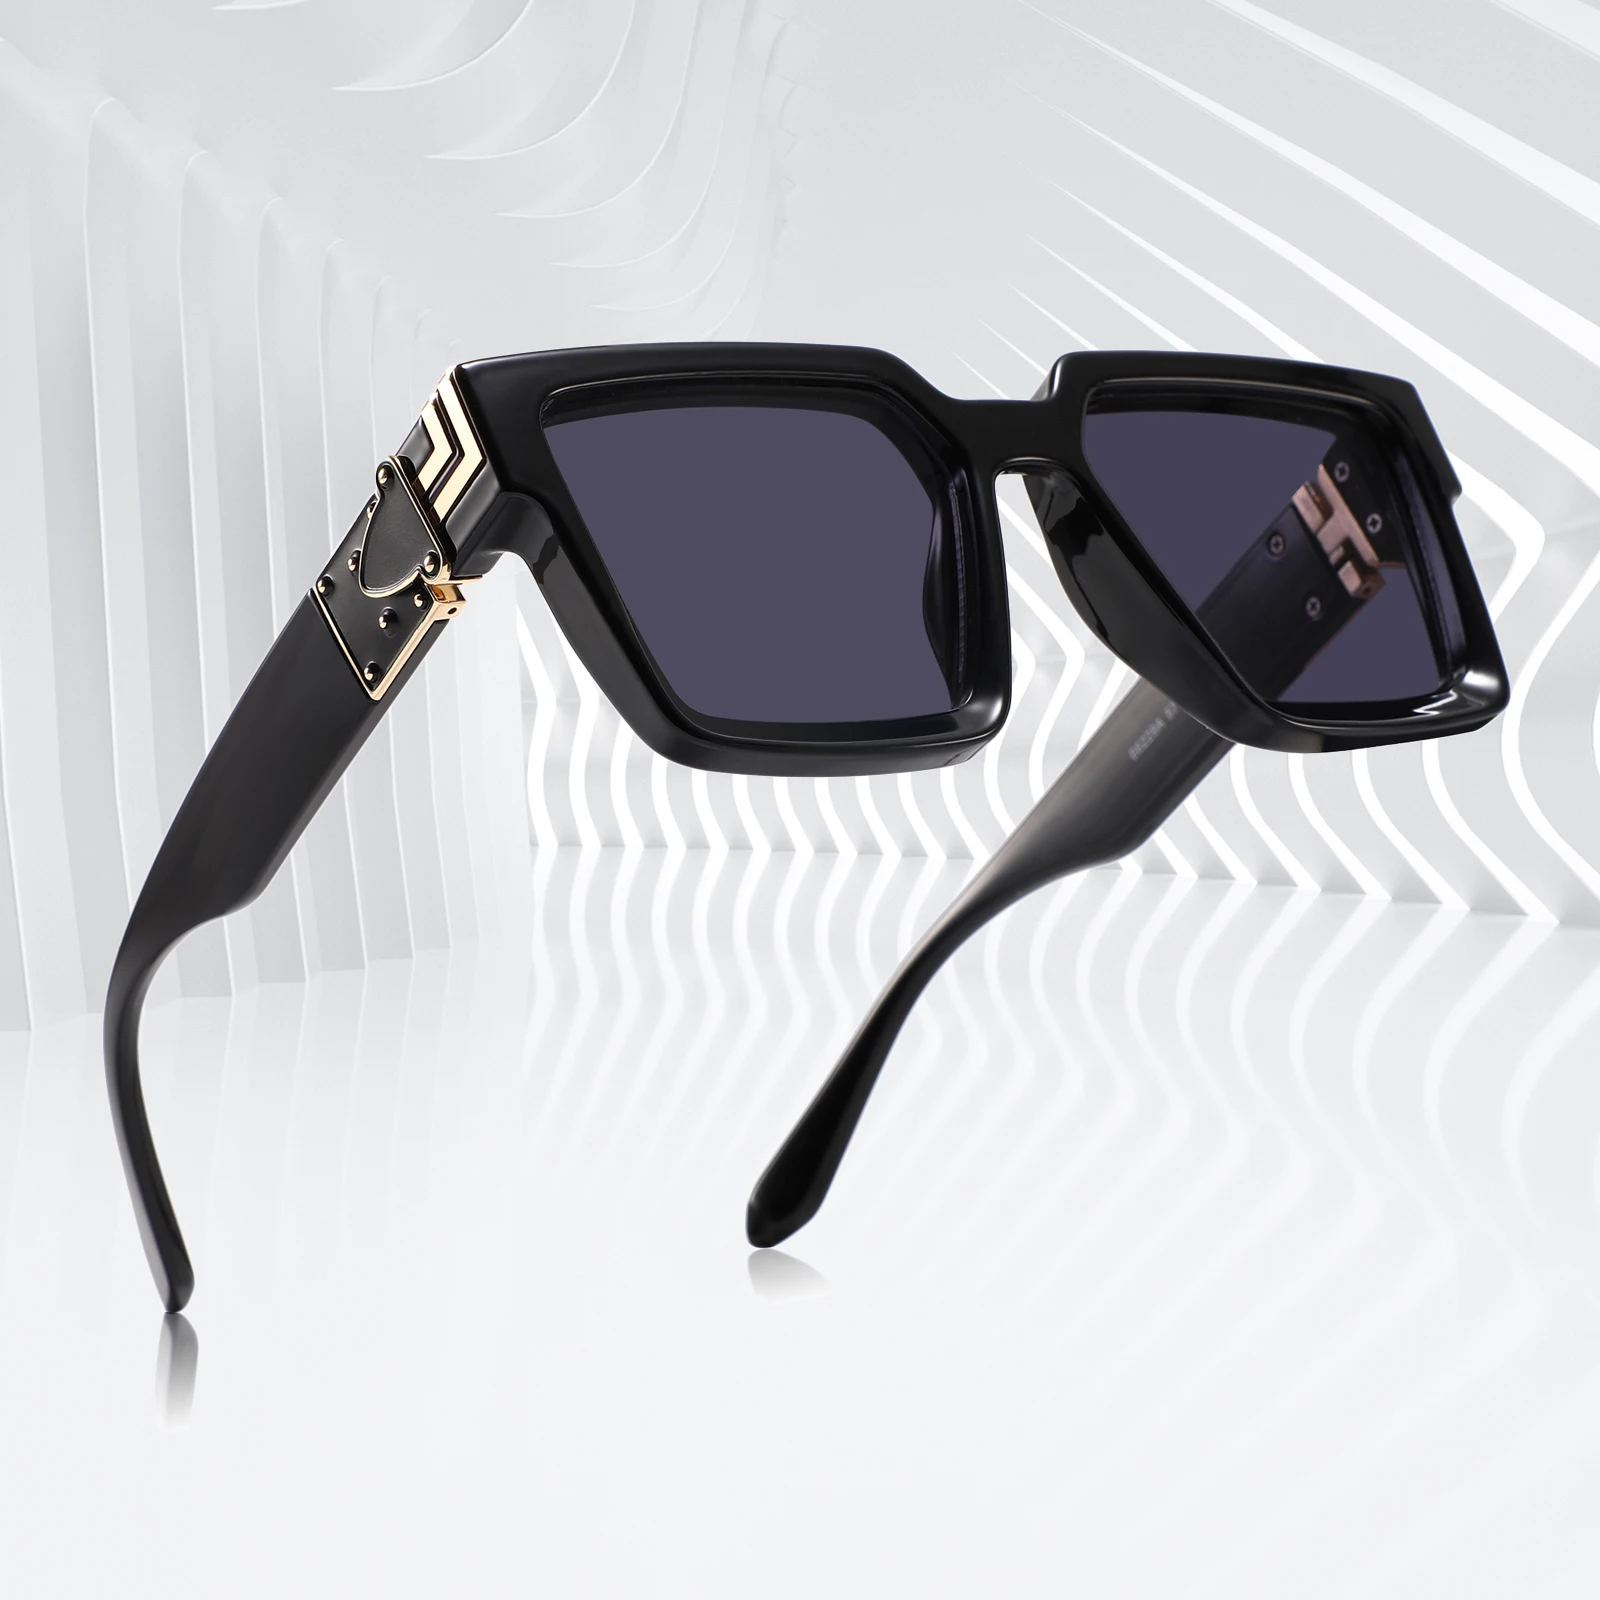 Square Oversized Millionaire Fashion Glasses Luxury Sunglasses For Men  Vintage Sunglasses Women Sonnenbrille Gafas De Sol Lentes